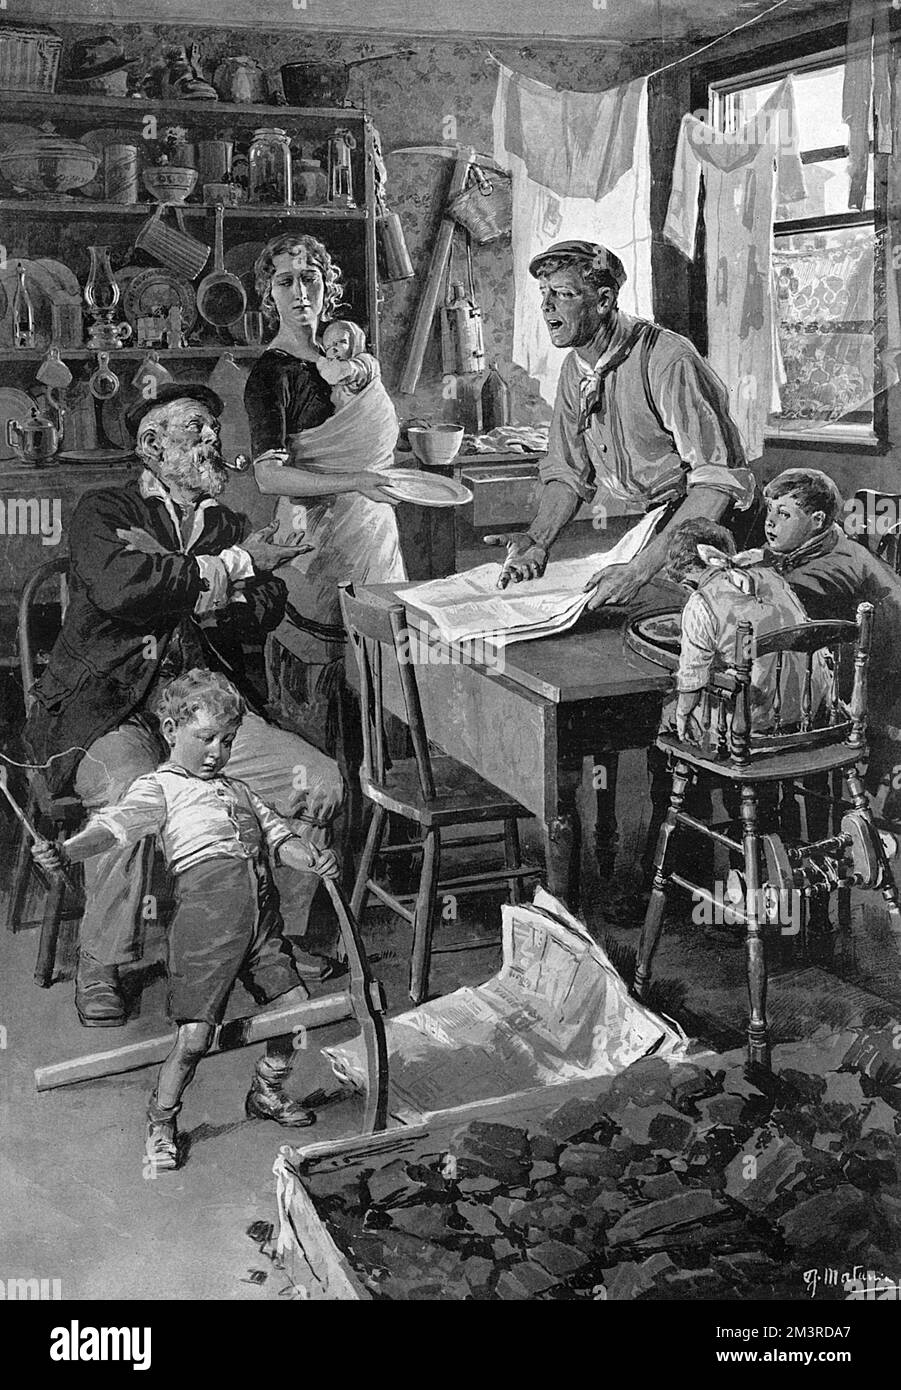 Im Streik: Die Familie des Collier zu Hause in Südwales. Eine Lebensstudie von Fortunino Matania. Der nationale Streik endete nach 37 Tagen mit der Einführung des Mindestlohngesetzes. 1912 Stockfoto